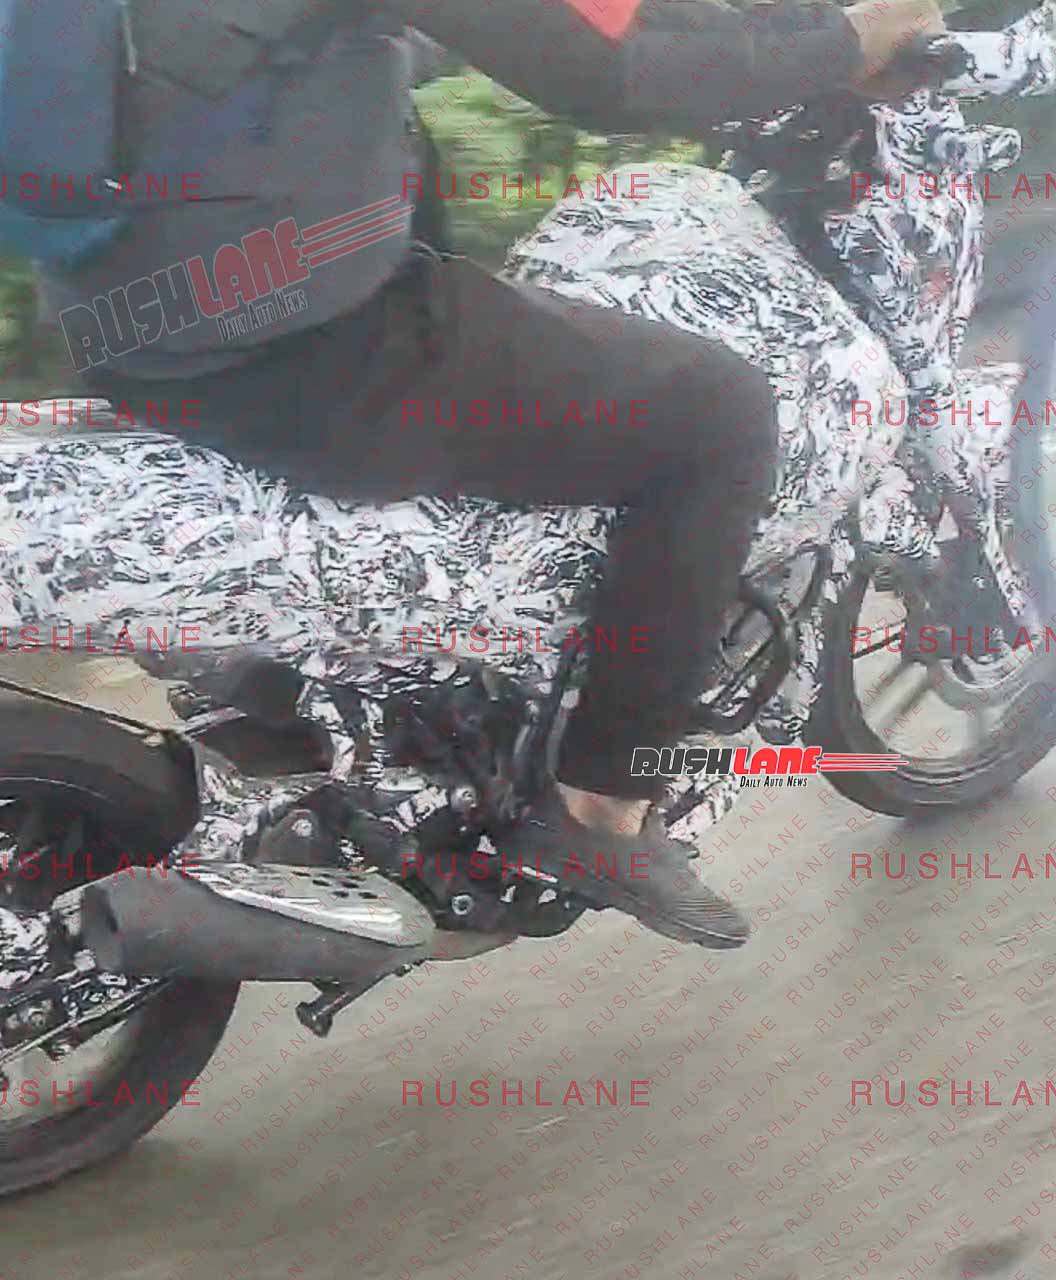 Bajaj CNG Motorcycle Spied